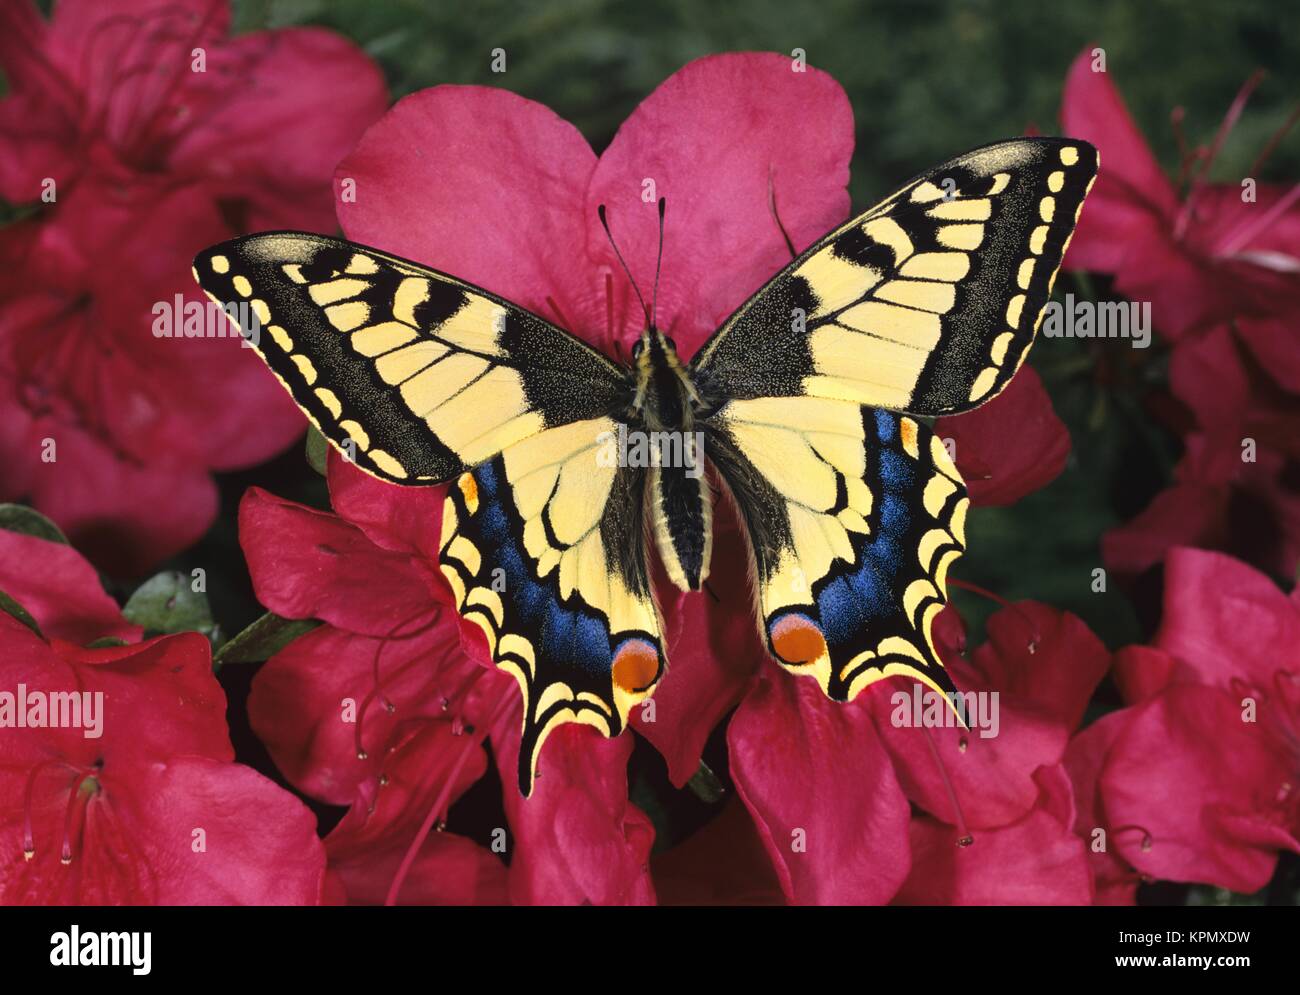 Schwalbenschwanz, Papilio machaon, Old world Swallowtail, auf rosa Azaleenblüten. Der große Schmetterling ist sehr selten in Deutschland. Er steht unter Naturschutz. Stock Photo